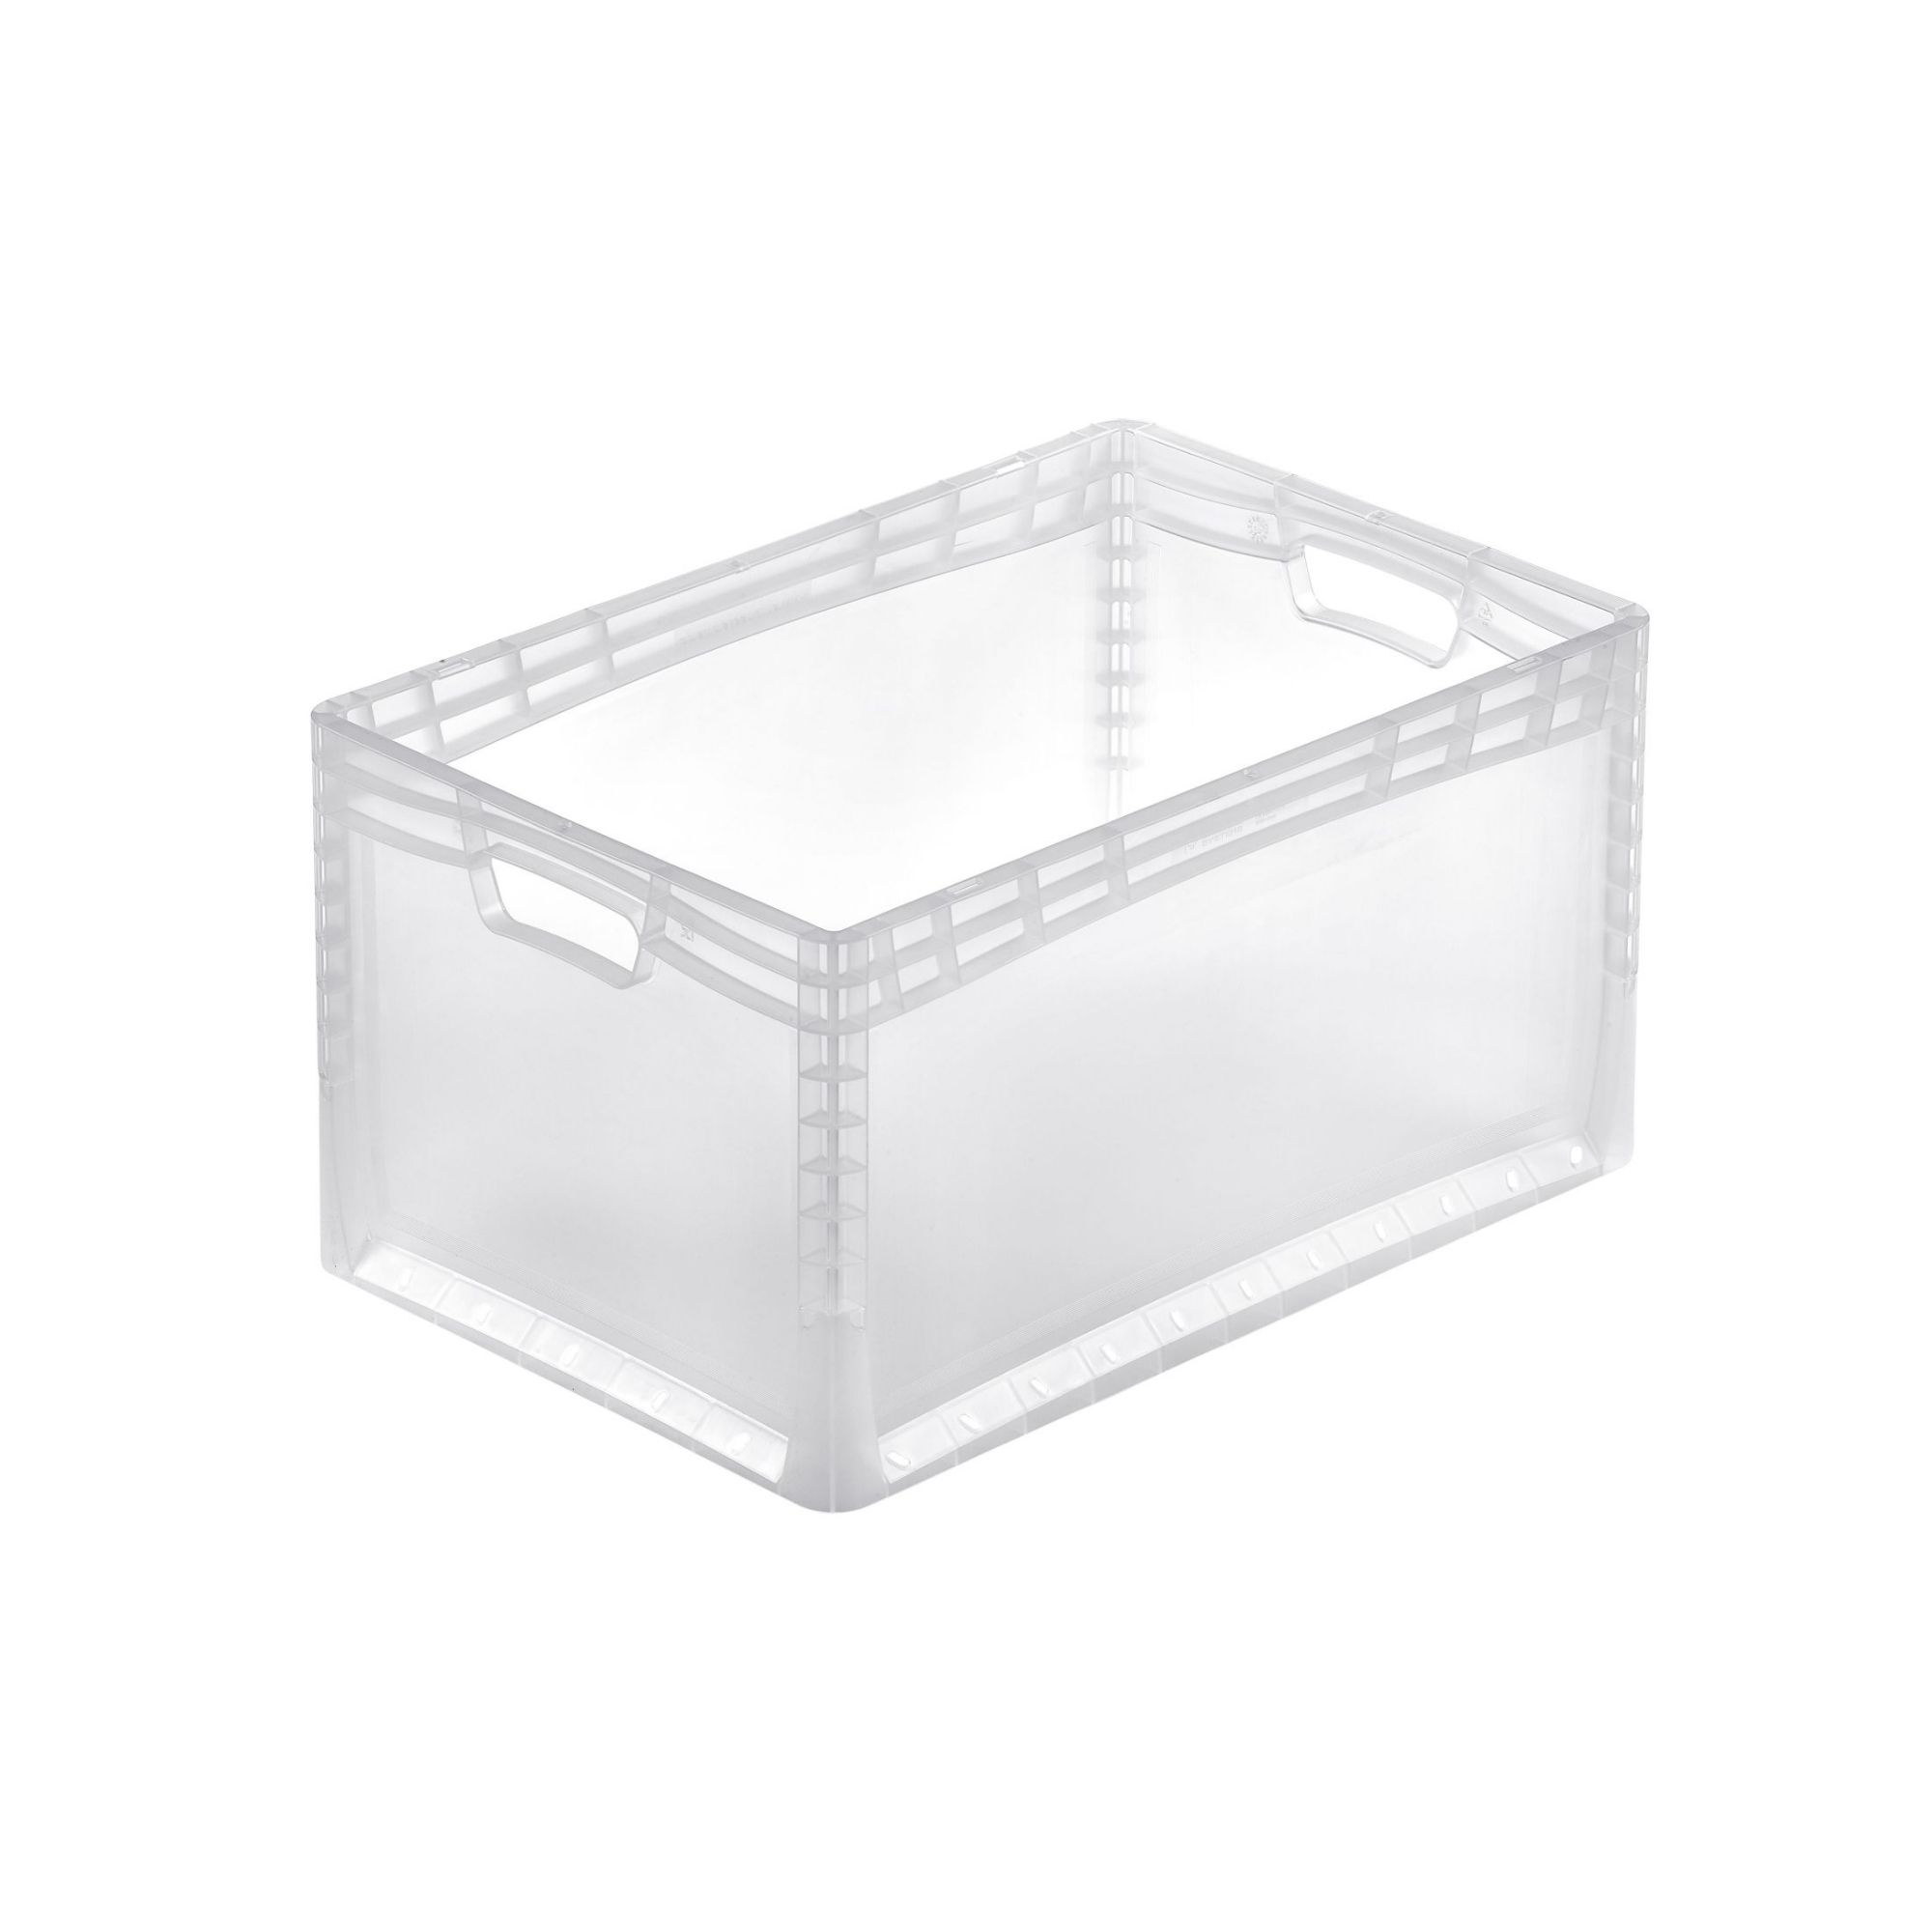 Transparenter Eurobehälter LightLine mit offenem Griff | HxBxT 32x40x60cm | 66 Liter | Eurobox, Transportbox, Transportbehälter, Stapelbehälter